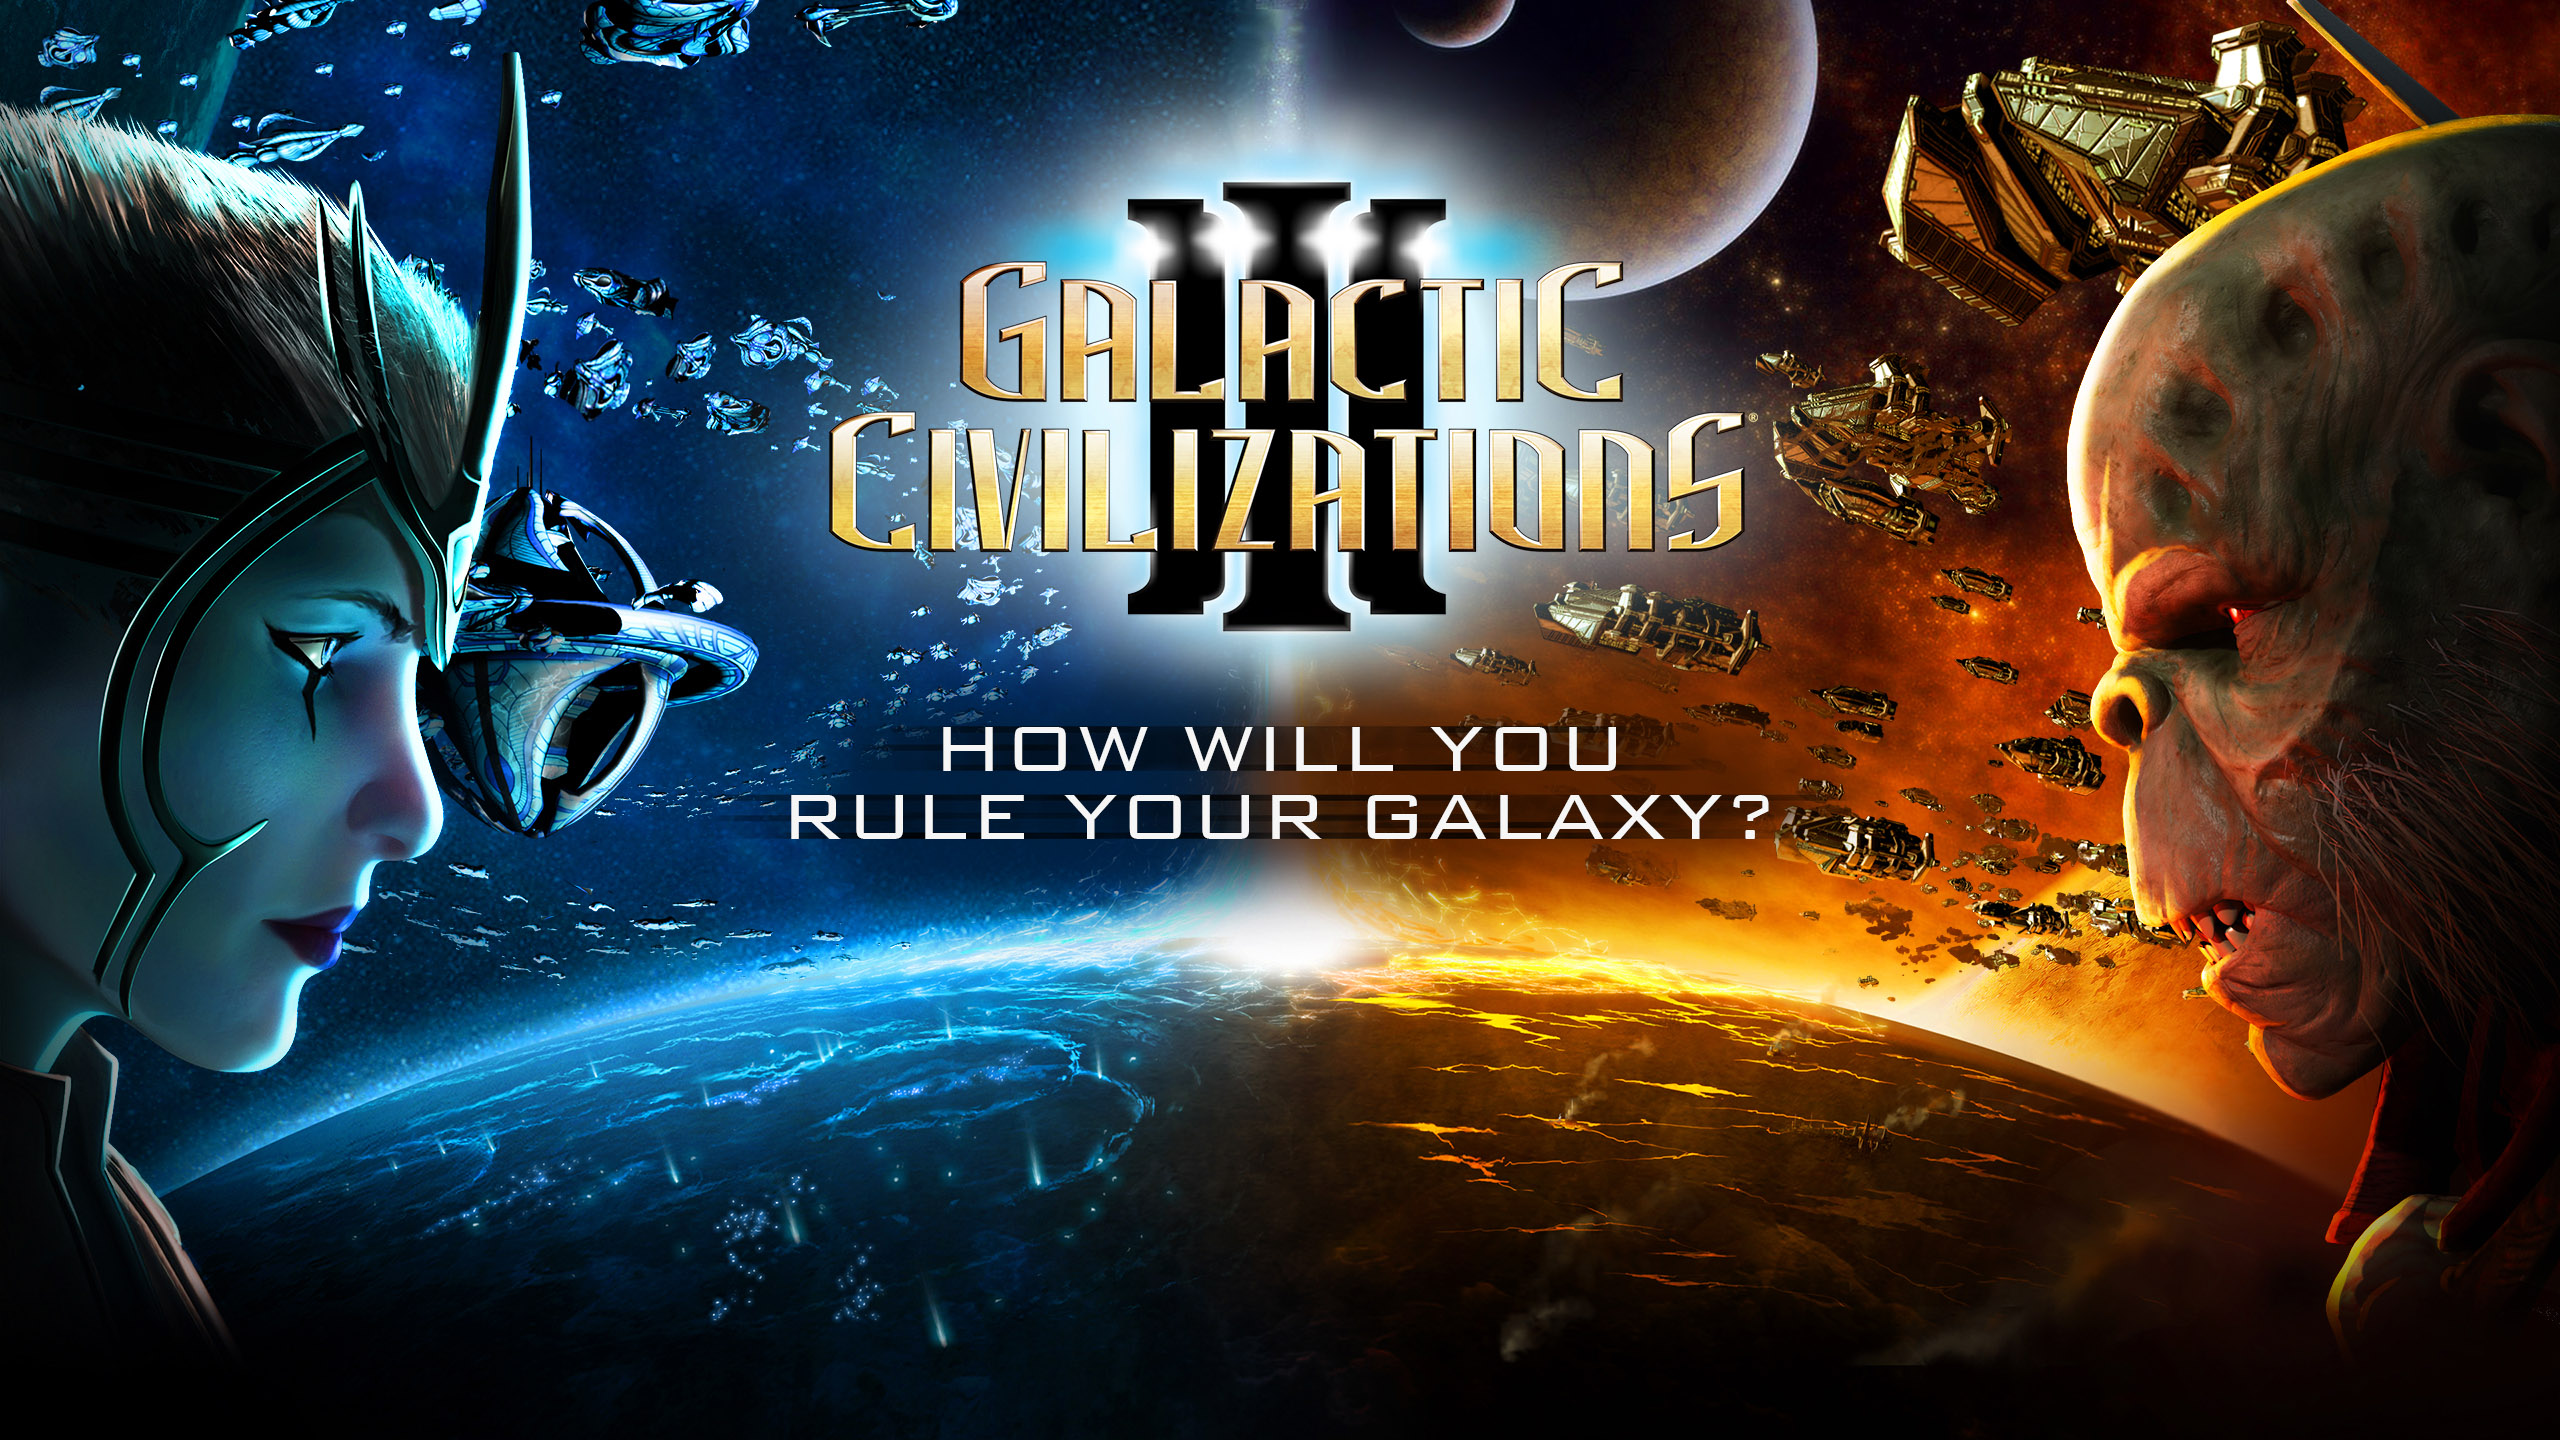 Galactic Civilizations III: Tựa game đưa bạn đắm chìm vào không gian ngoài vũ trụ đang được miễn phí trên Epic Games